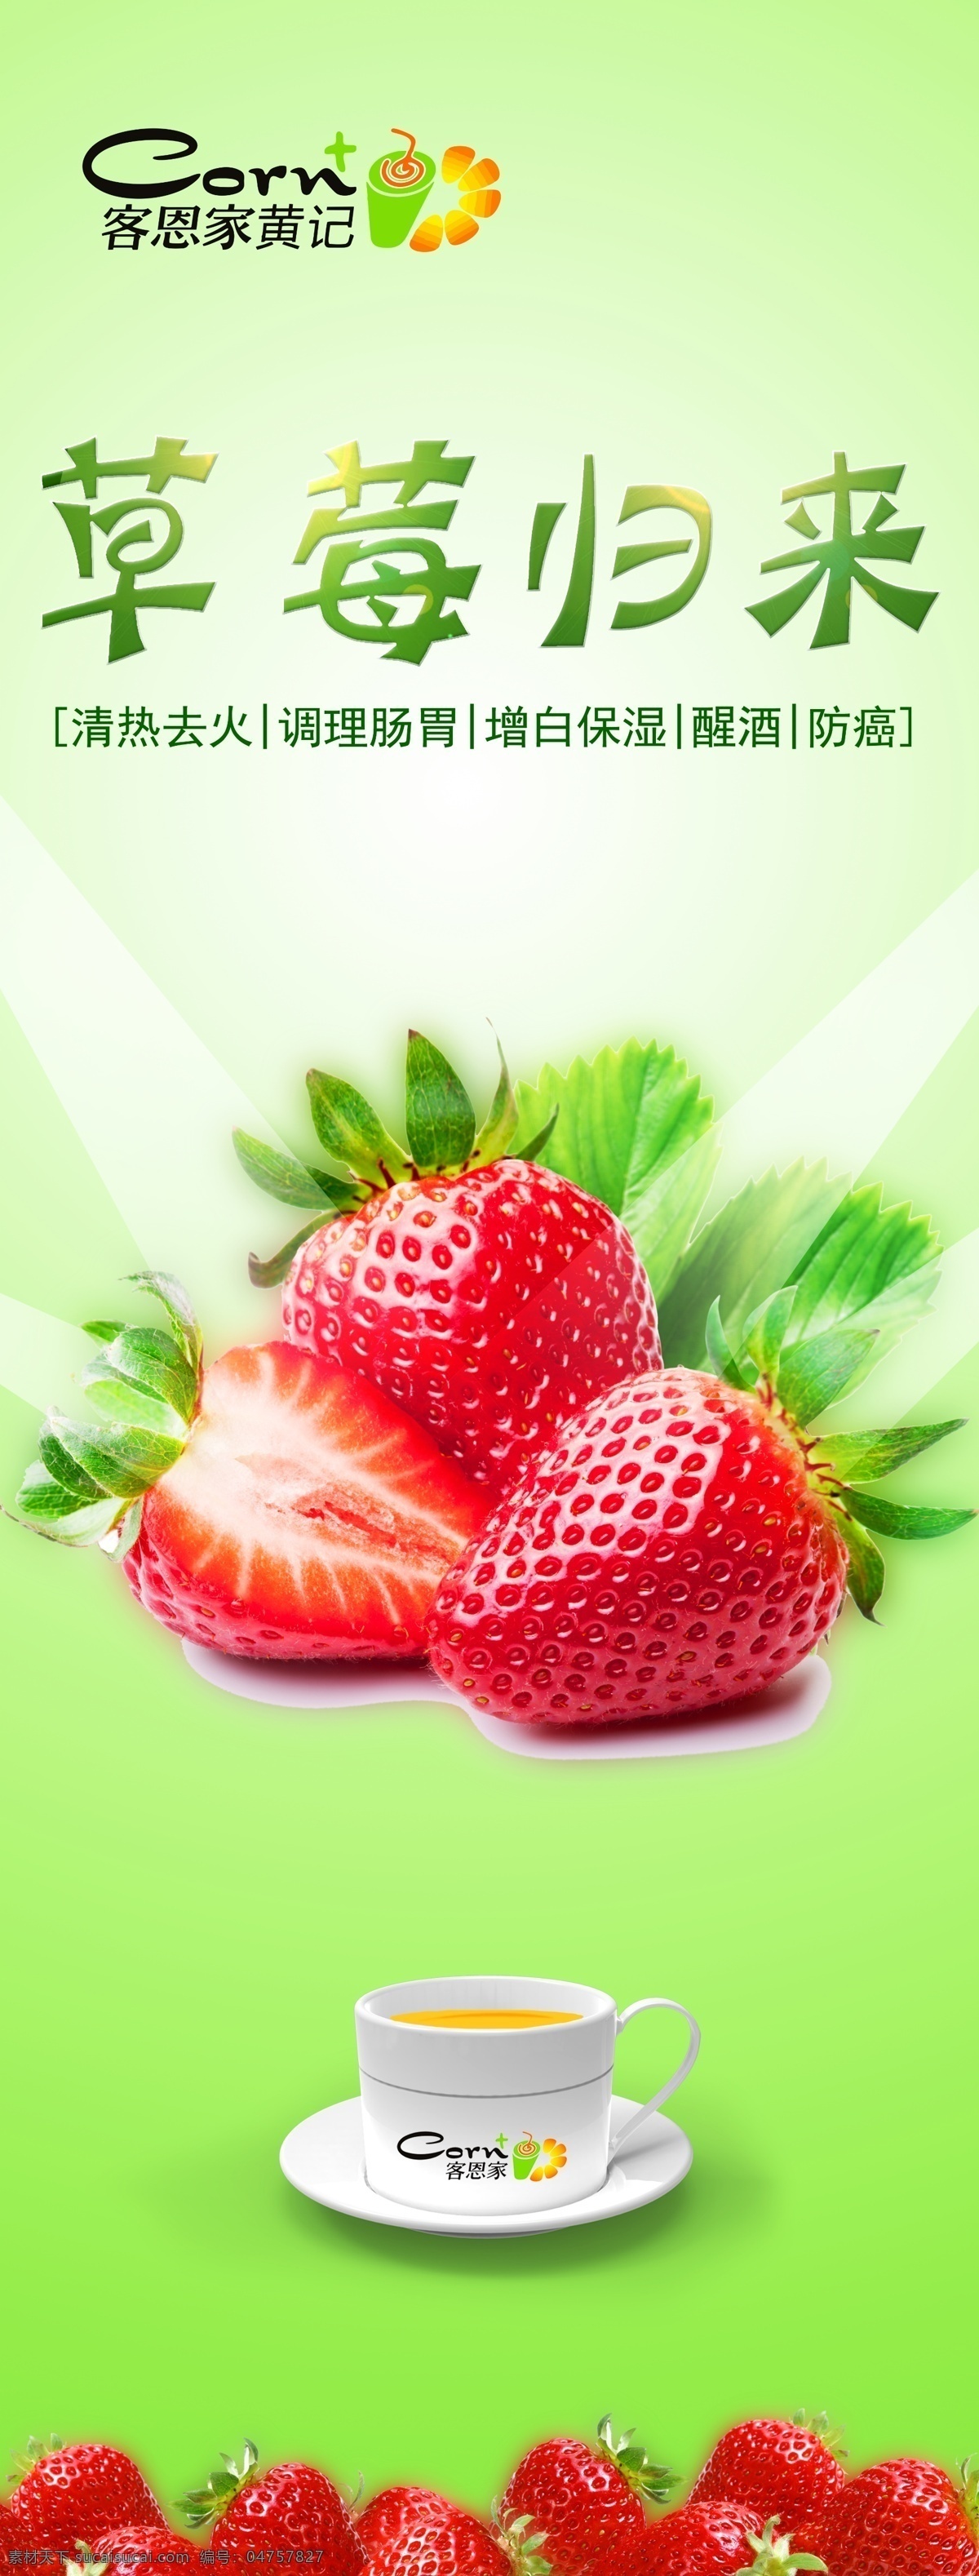 黄 记 玉米 汁 草莓汁 鲜榨 饮料 鲜榨饮品 黄记玉米汁 水果 招贴设计